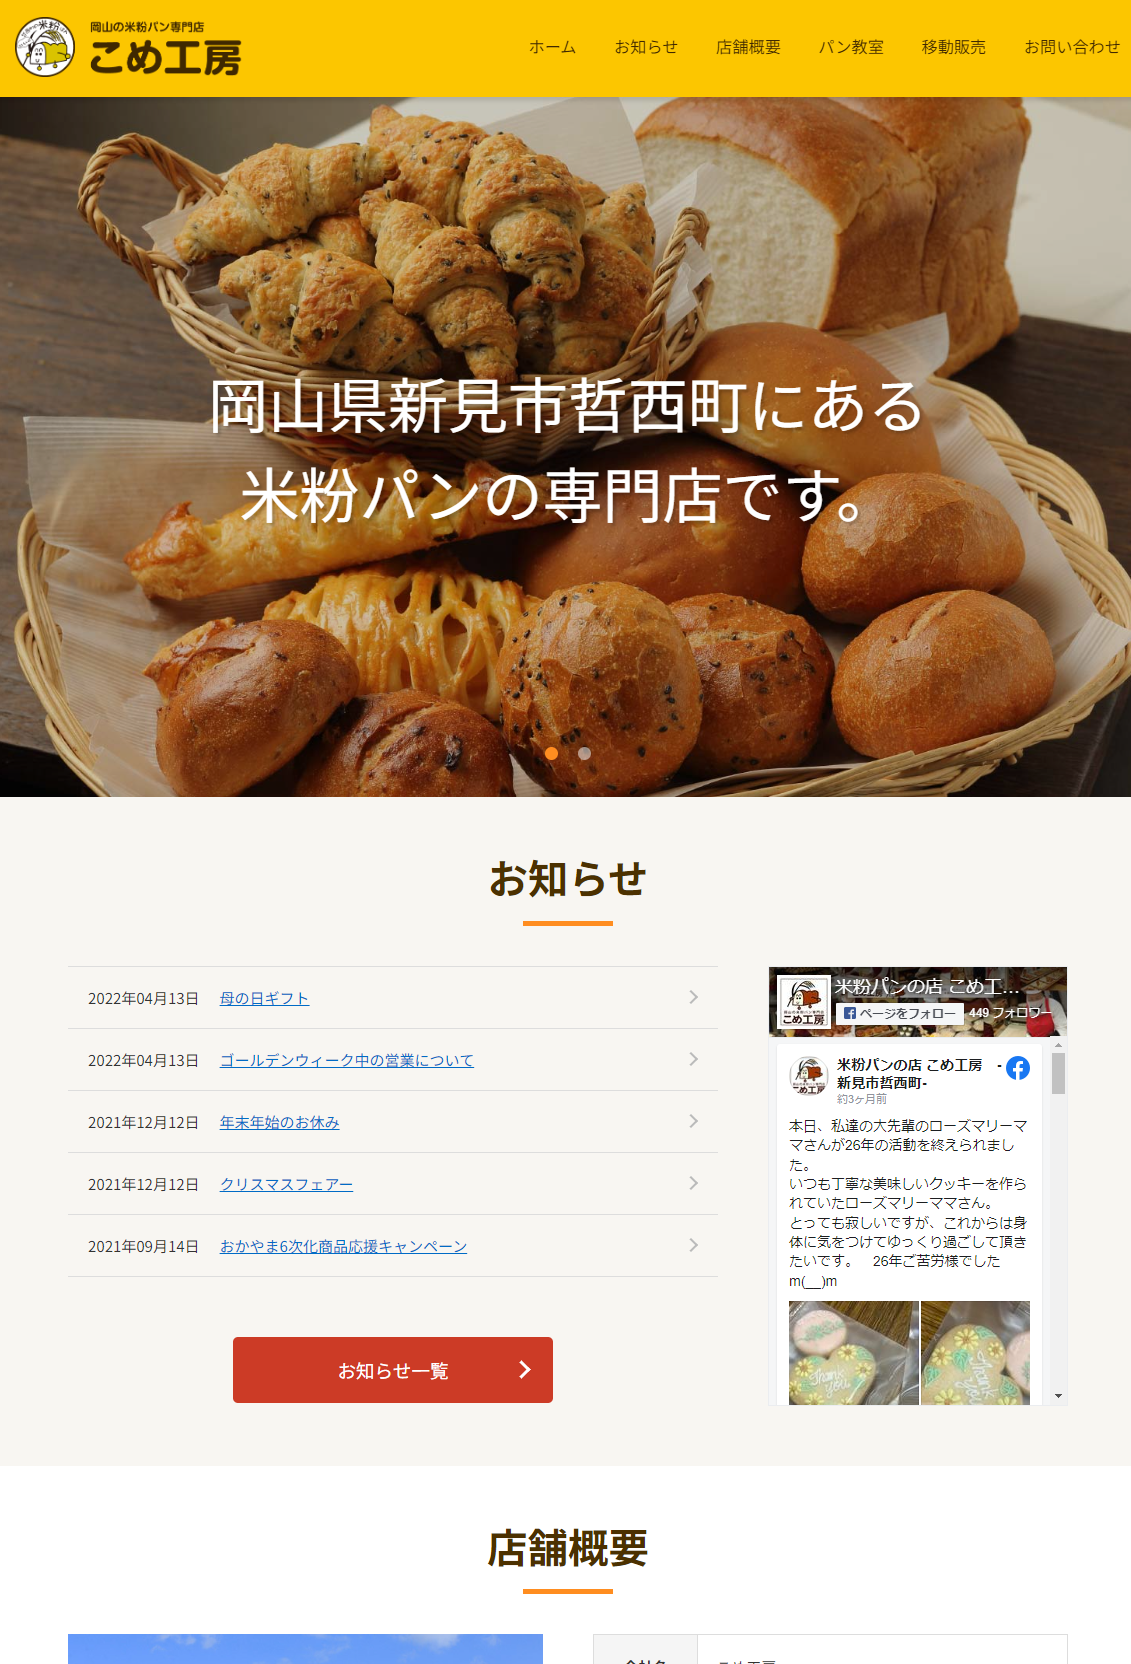 岡山でホームページ作るならエヌディエス__制作事例_パン製造サイト